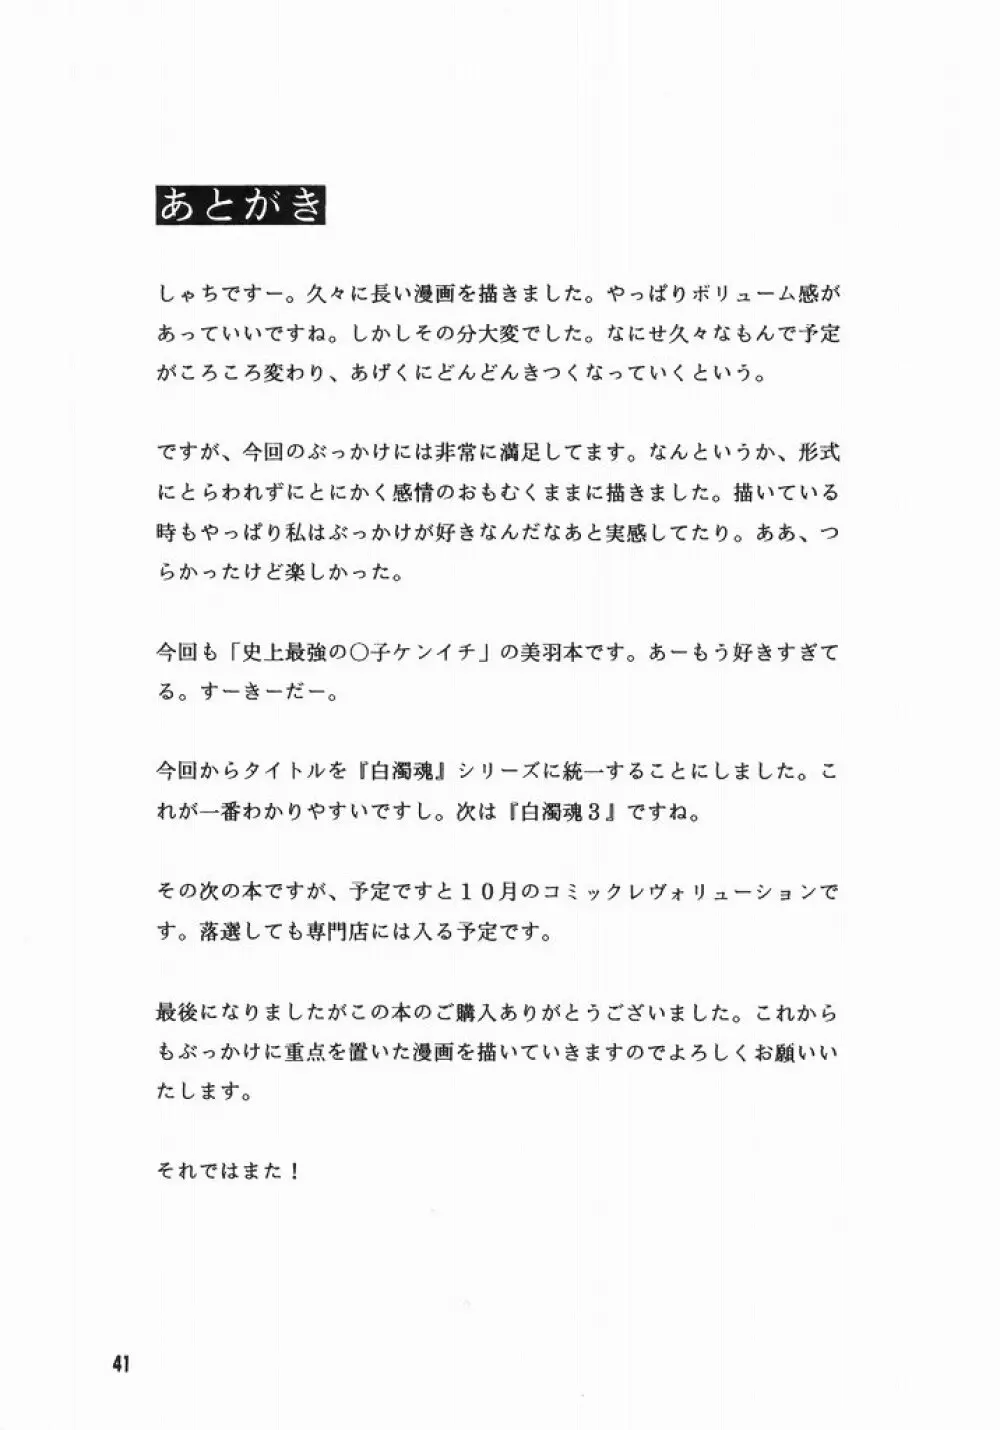 Hakudaku Tamashii 2 40ページ